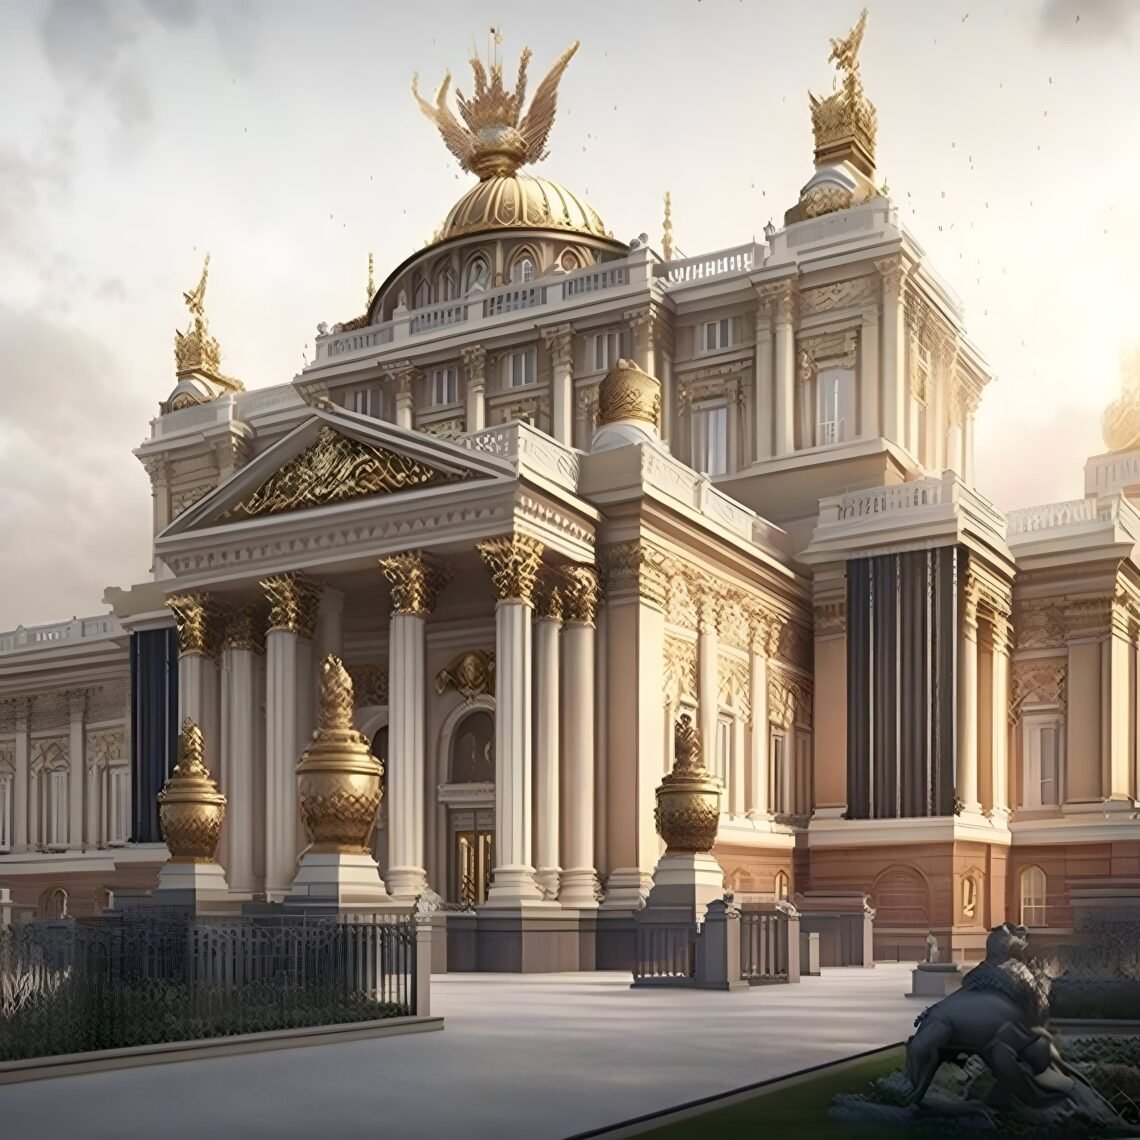 Buckingham Palace, Redesigned in Byzantine Style - UK